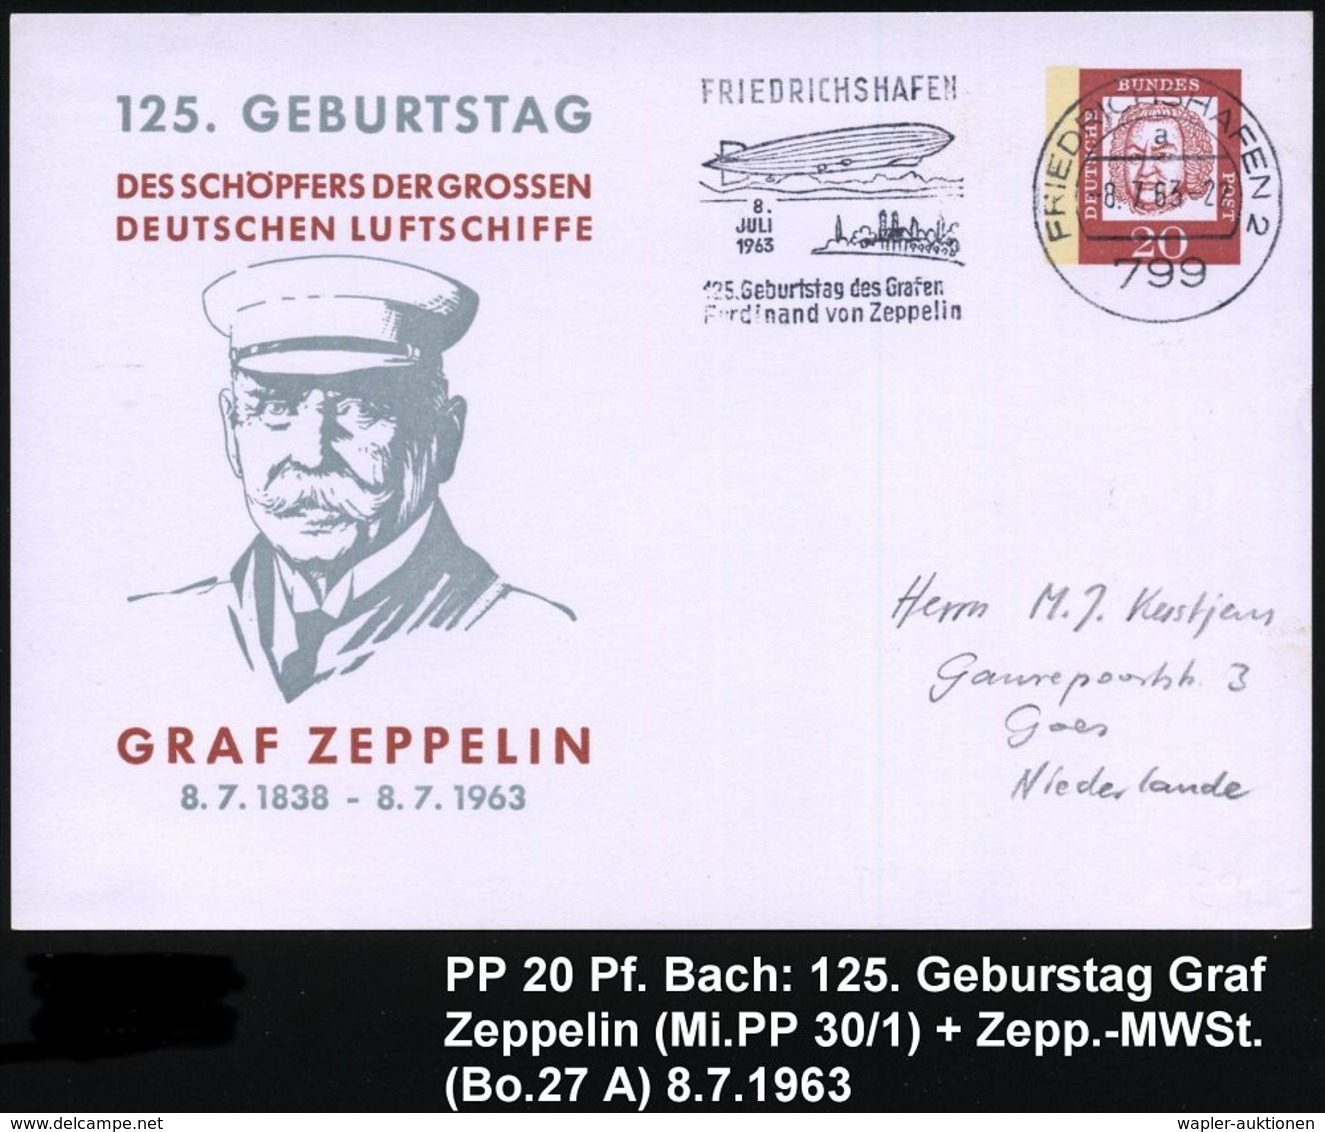 799 FRIEDRICHSHAFEN 2/ A/ ..125.Geburtstag Des Grafen/ Ferd.von Zeppelin 1963 (8.7.) MWSt = Zeppelin (Bo.27 A) Auf PP 20 - Zeppelins